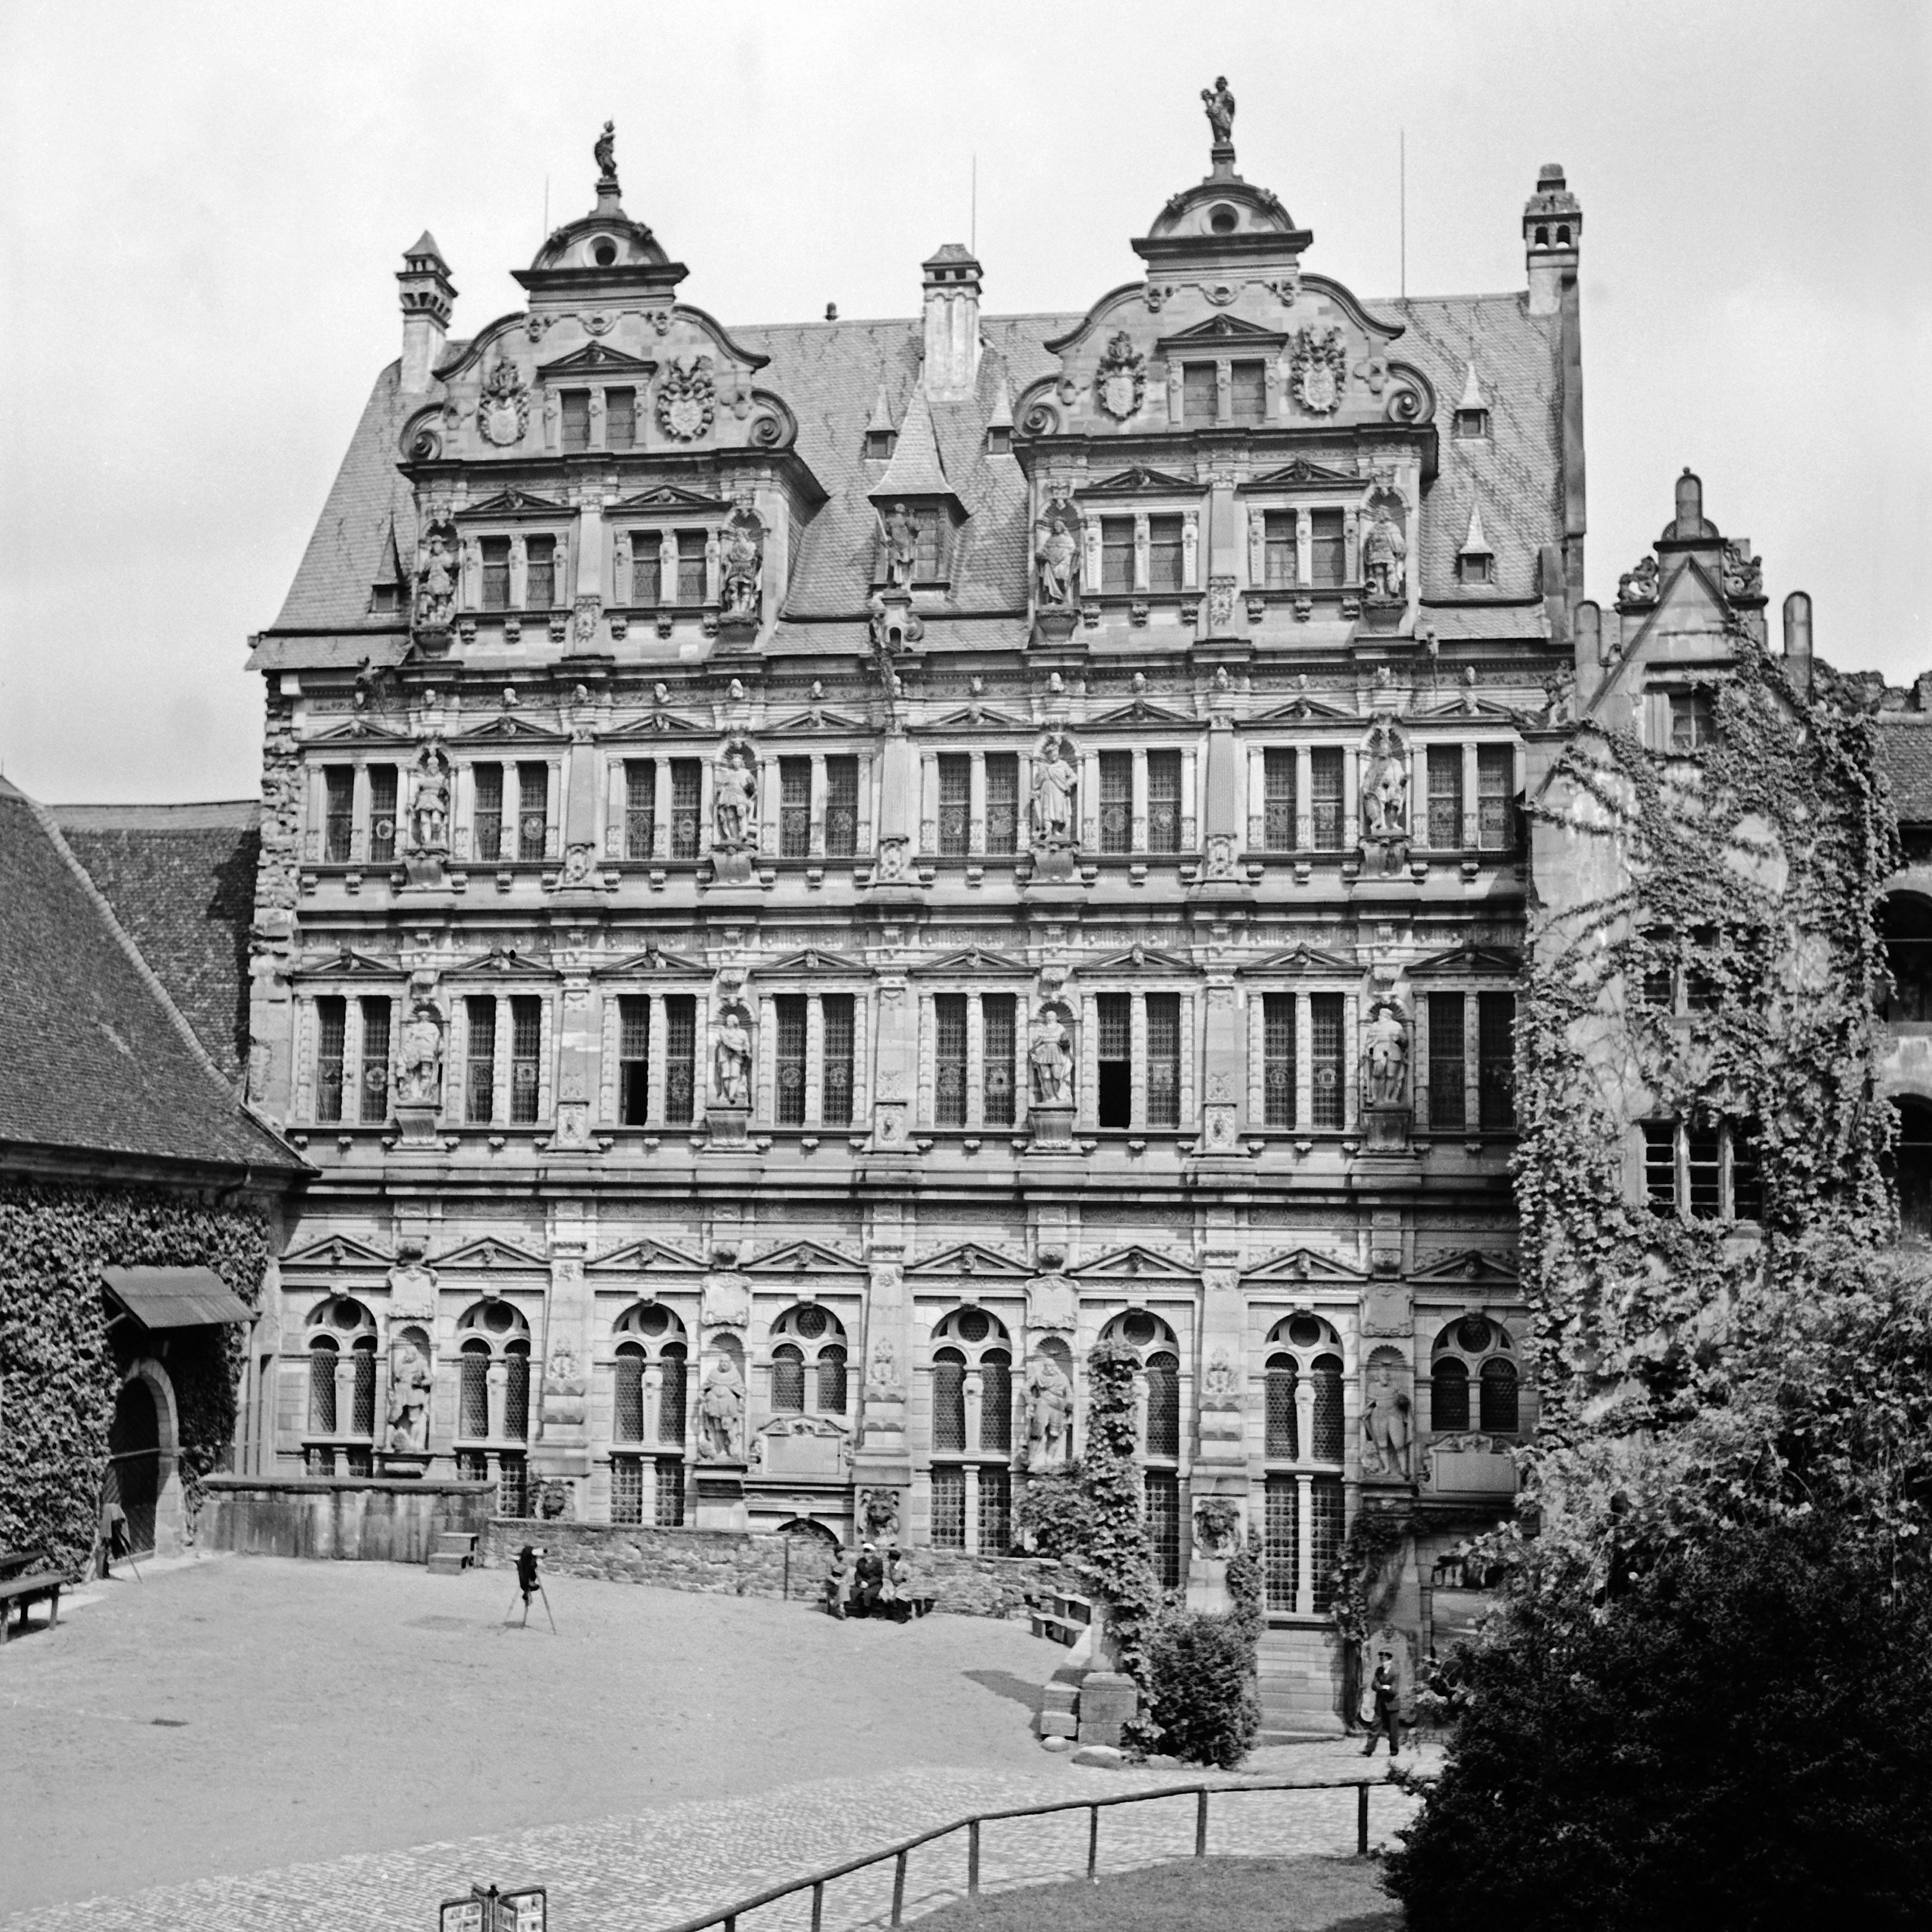 Black and White Photograph Karl Heinrich Lämmel - bâtiment Friedrichsbau au château de Heidelberg, Allemagne, 1938, Imprimé ultérieurement